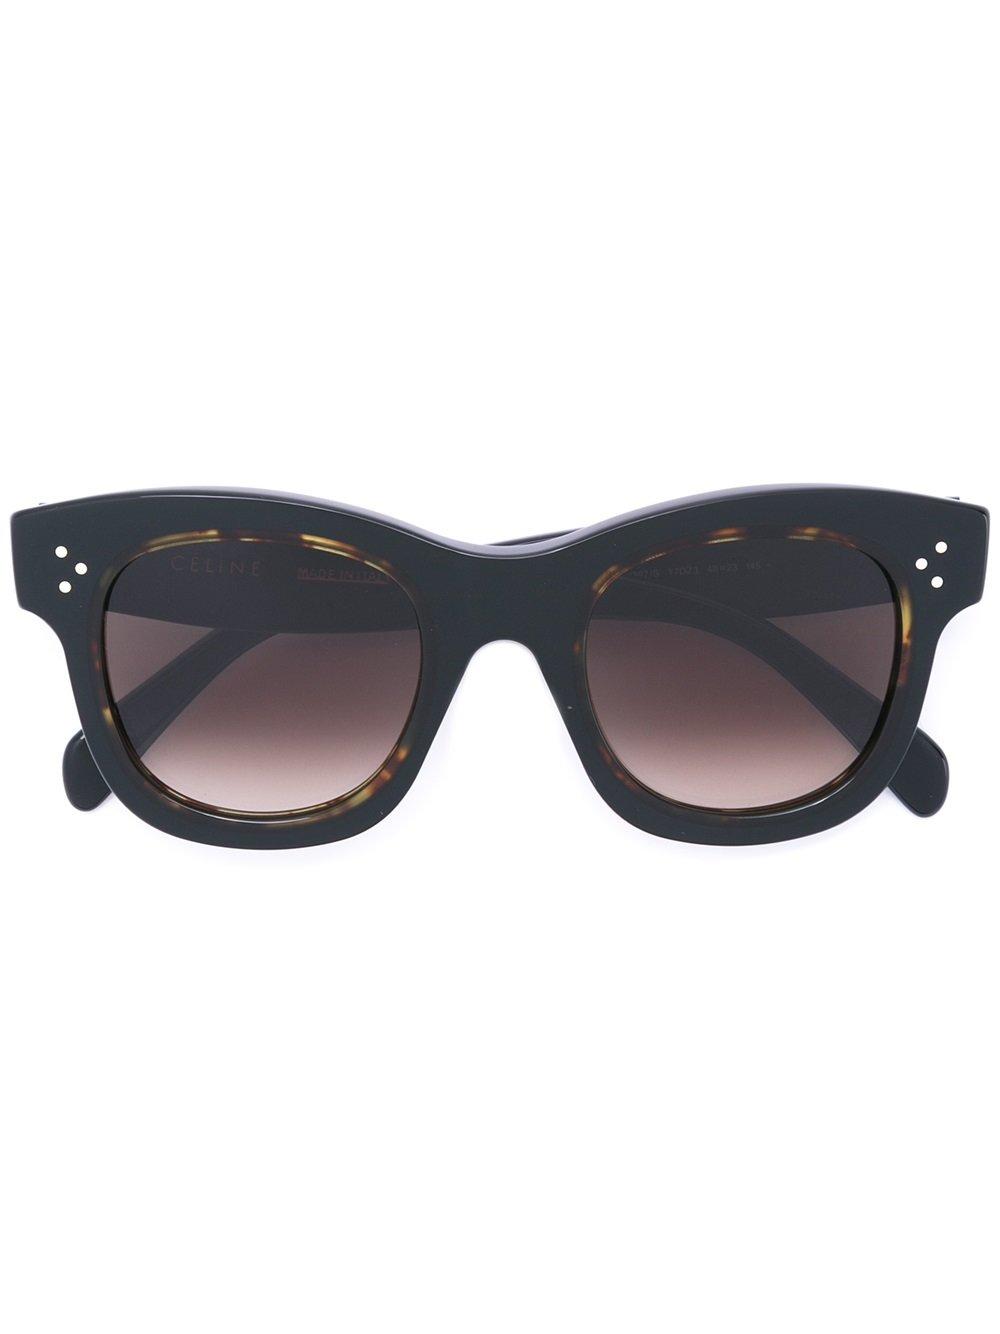 Celine Cat Eye Sunglasses In Black | ModeSens